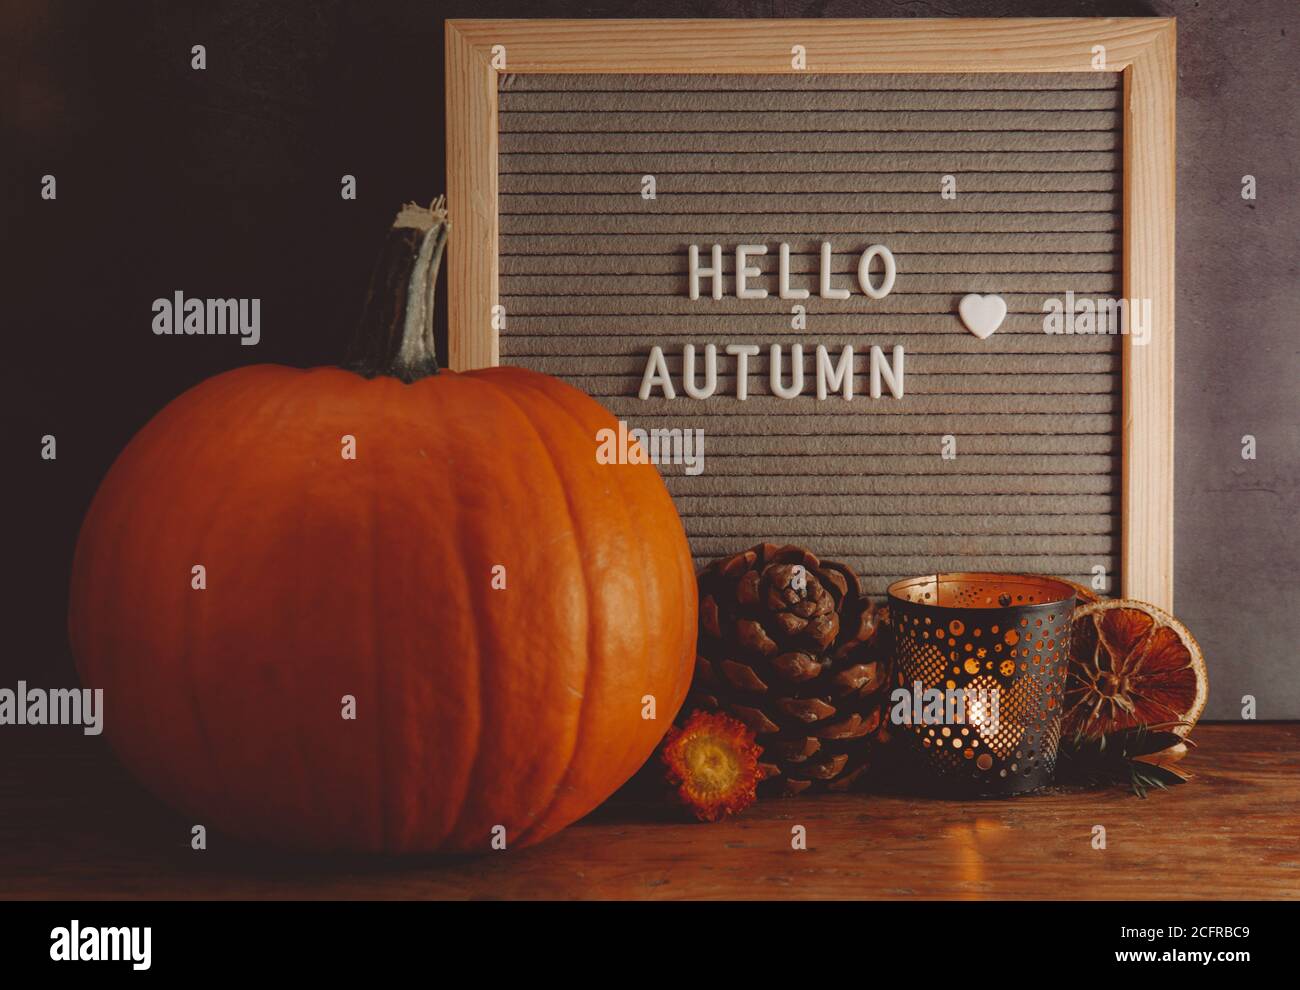 Hallo Herbstschild. Herbst-Mood-Board. Herbstkomposition mit Kürbis, Kiefer, Kerze und Message Board. Gemütliche Herbststimmung. Stockfoto